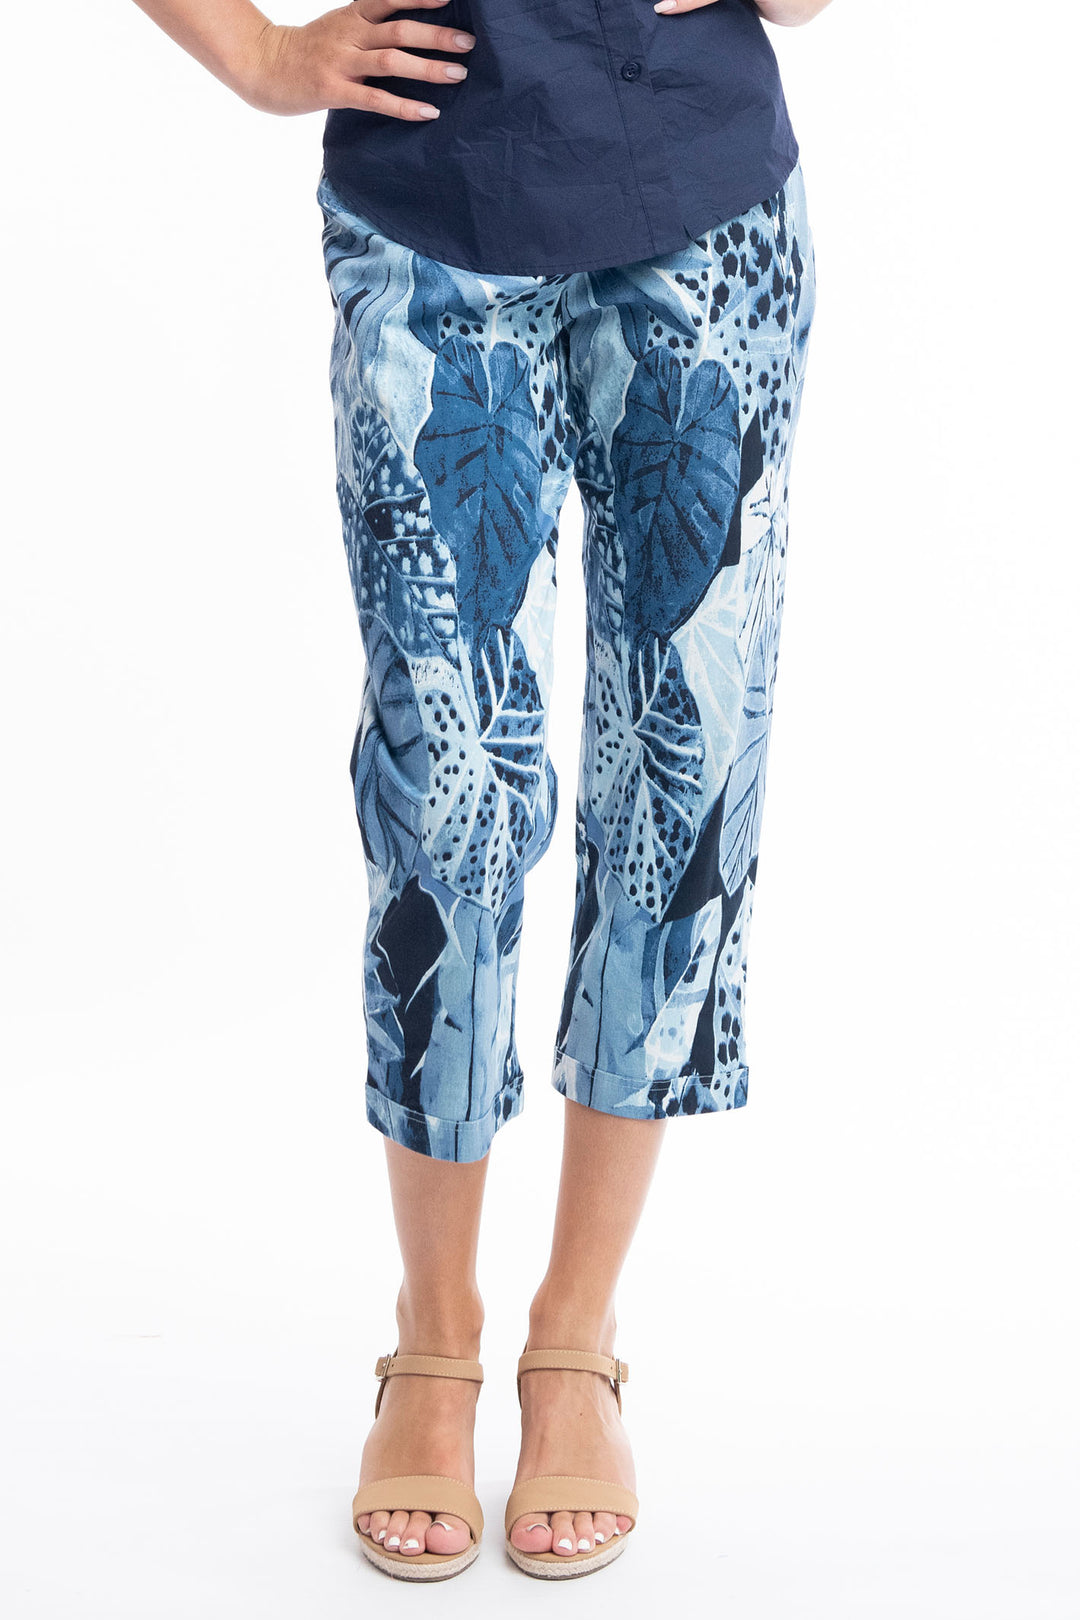 Orientique 2674 Agios Blue Leaf Print Stretch Capri Crop Trouser - Shirley Allum Boutique